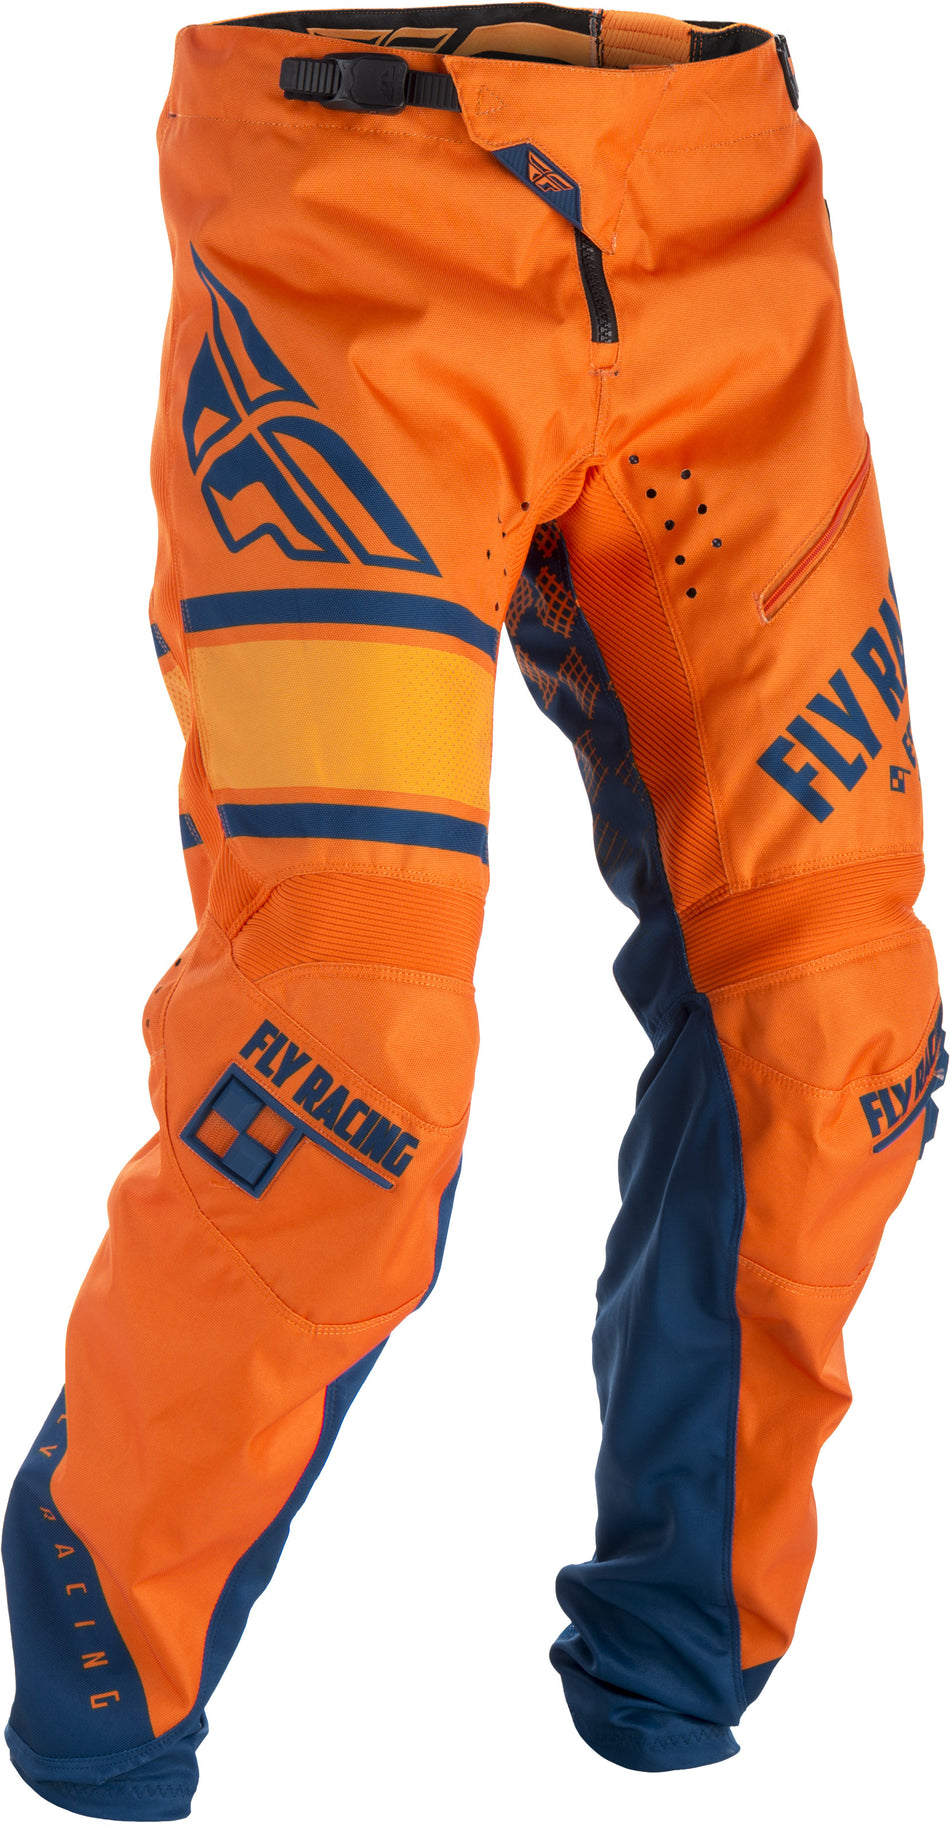 FLY RACING Kinetic Era Bicycle Pants Orange/Navy Sz 22 371-02822